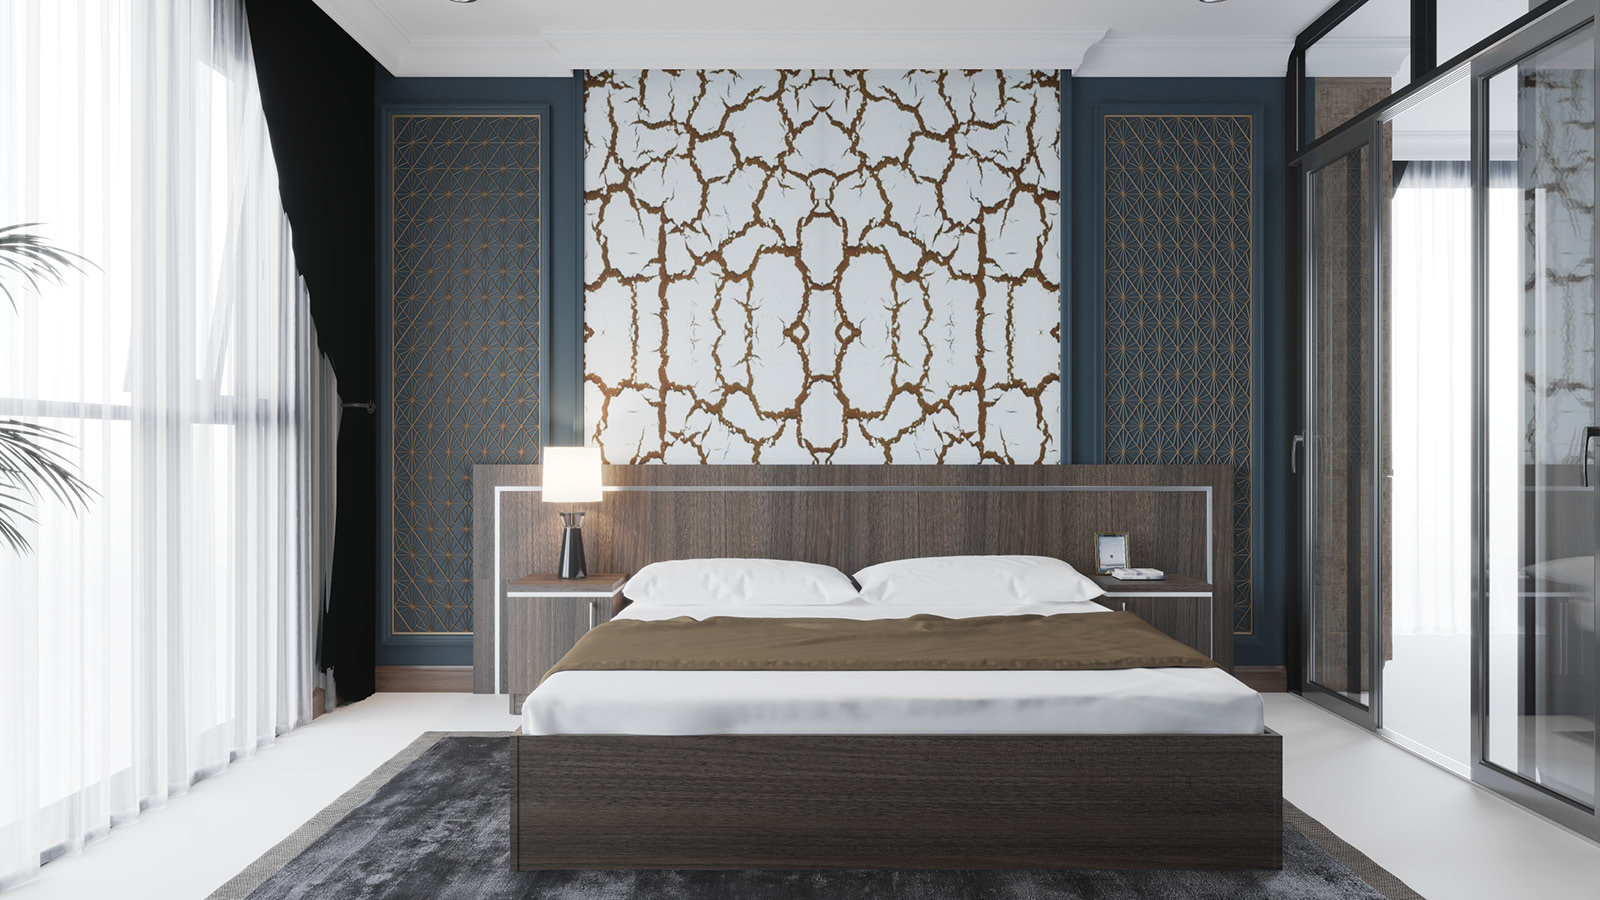 Przestronne łóżko z panelem zostało ustawione w pokoju hotelowym - w otoczeniu jasnej, marmurowej ściany oraz dużego lustra.